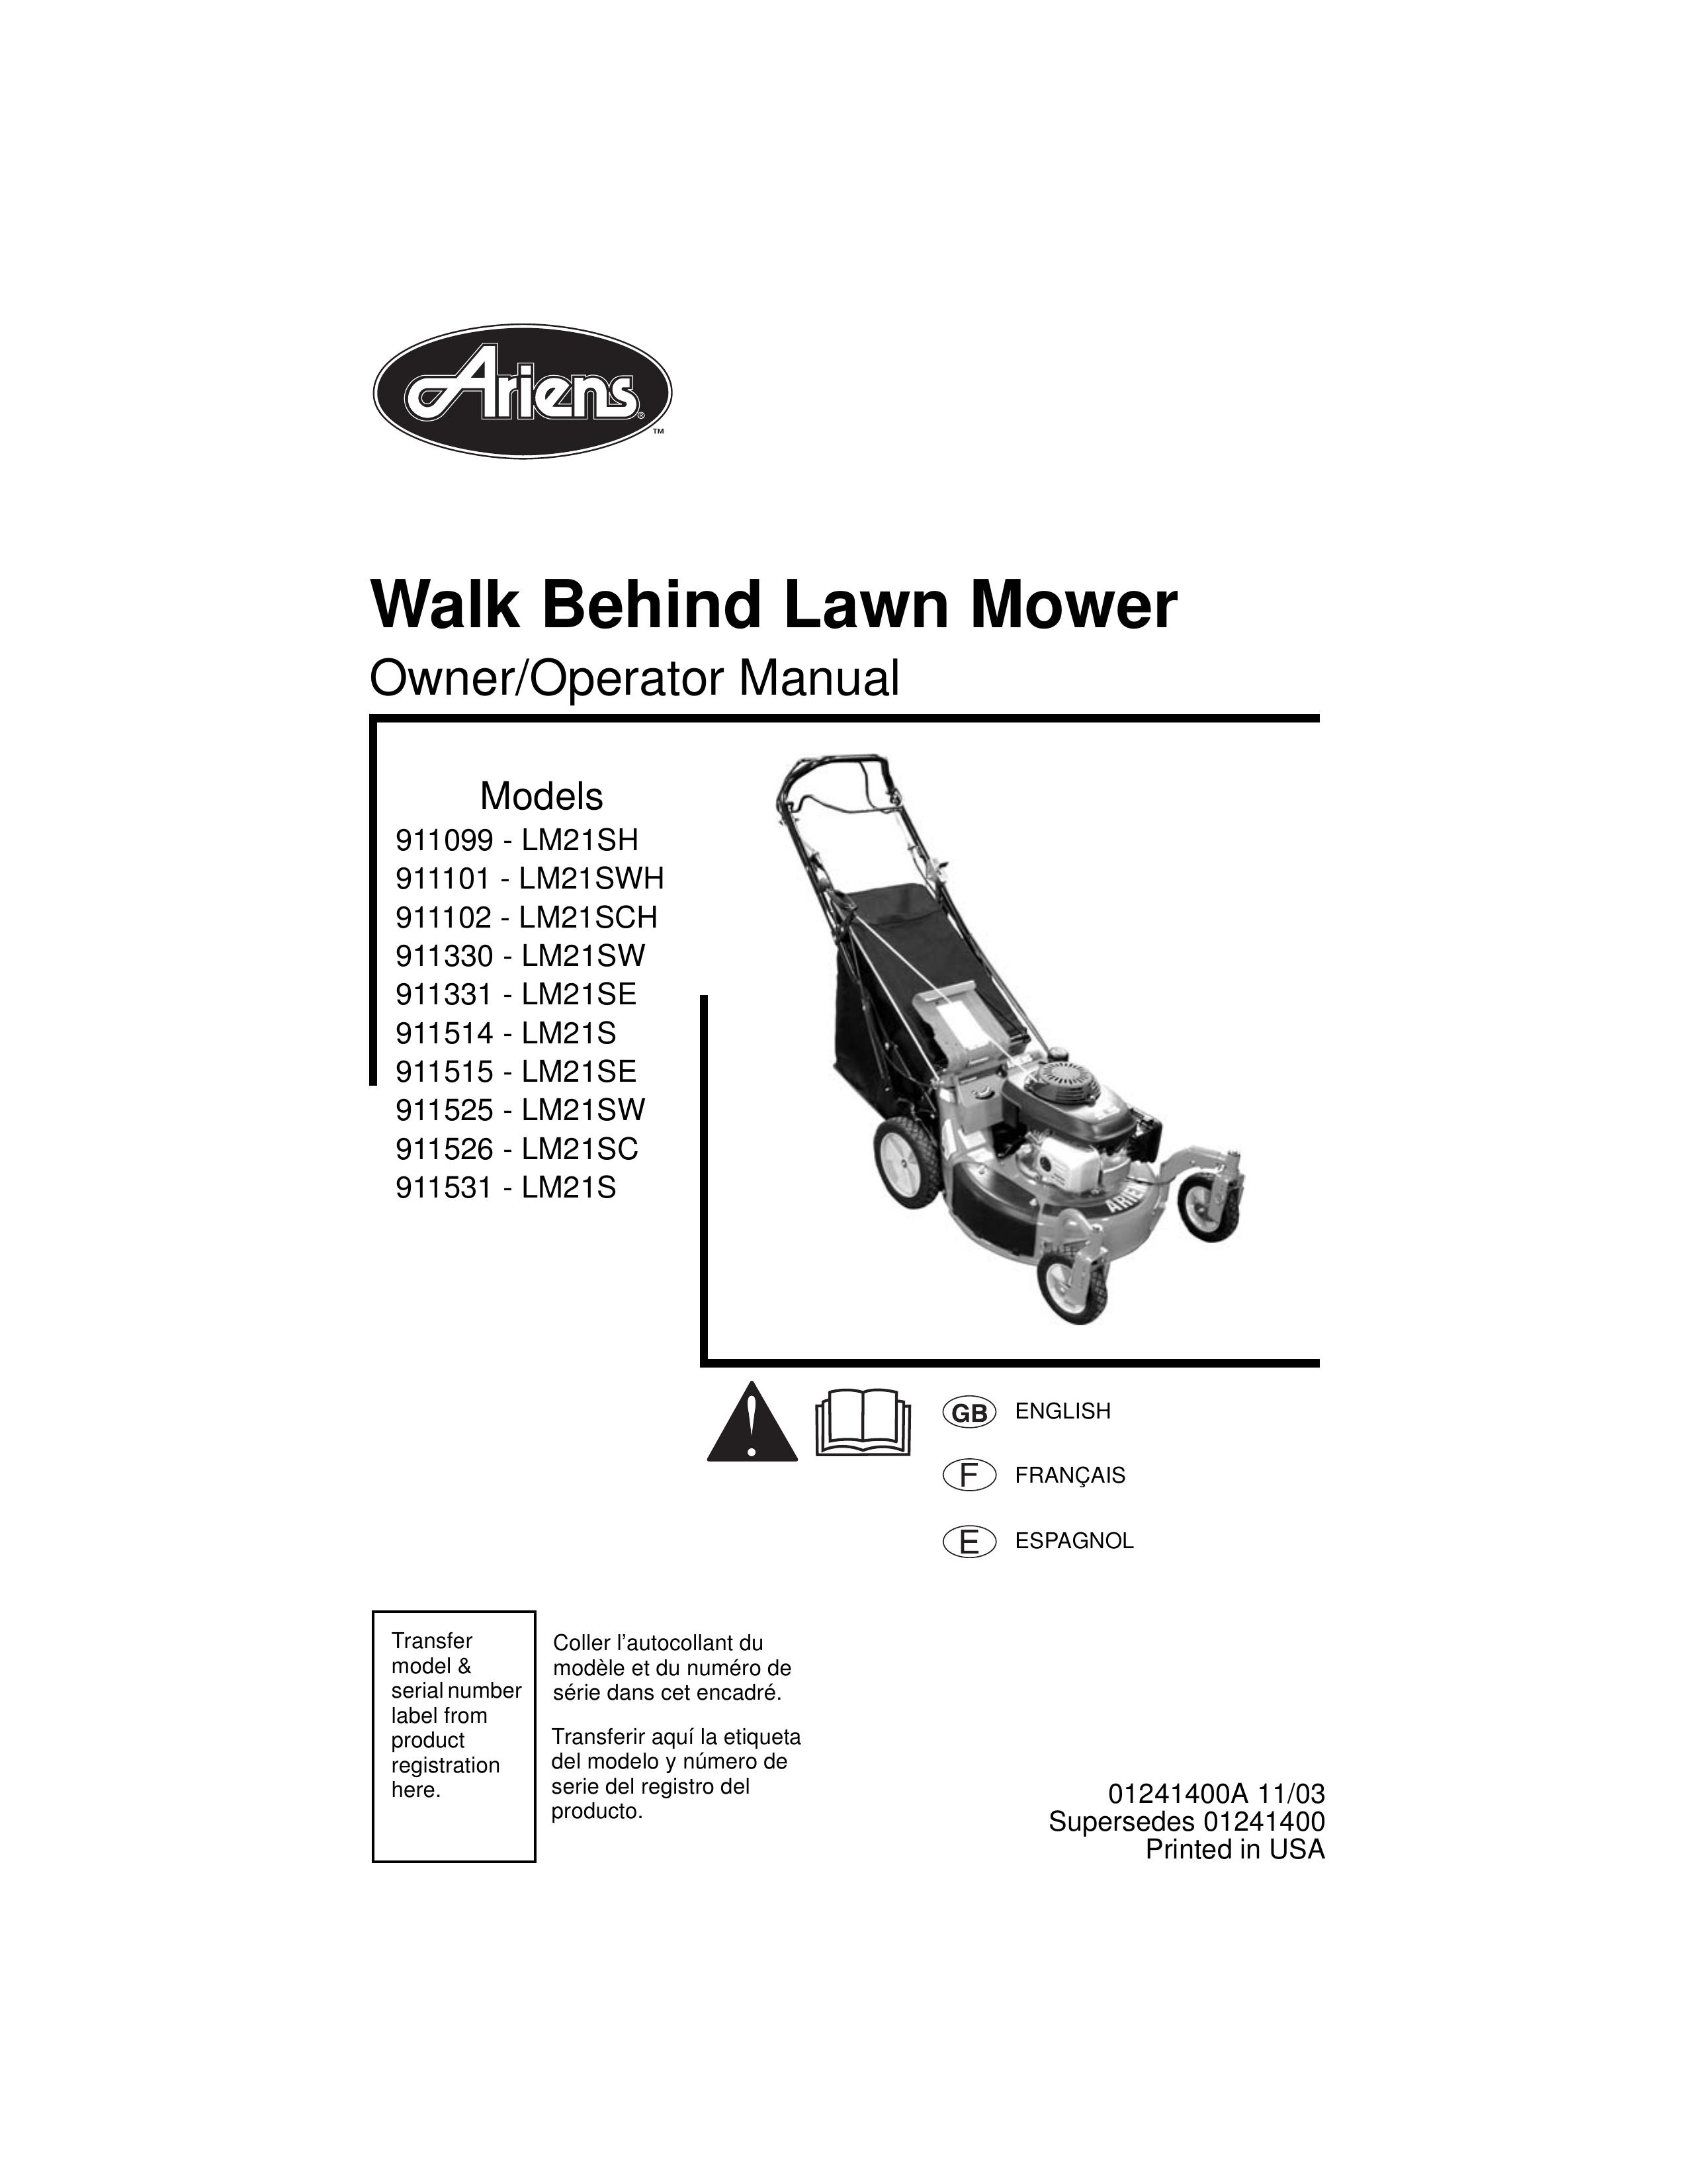 Ariens 911099, 911101, 911102, 911330, 911331, 911514, 911515, 911525, 911526, 911531 Lawn Mower User Manual